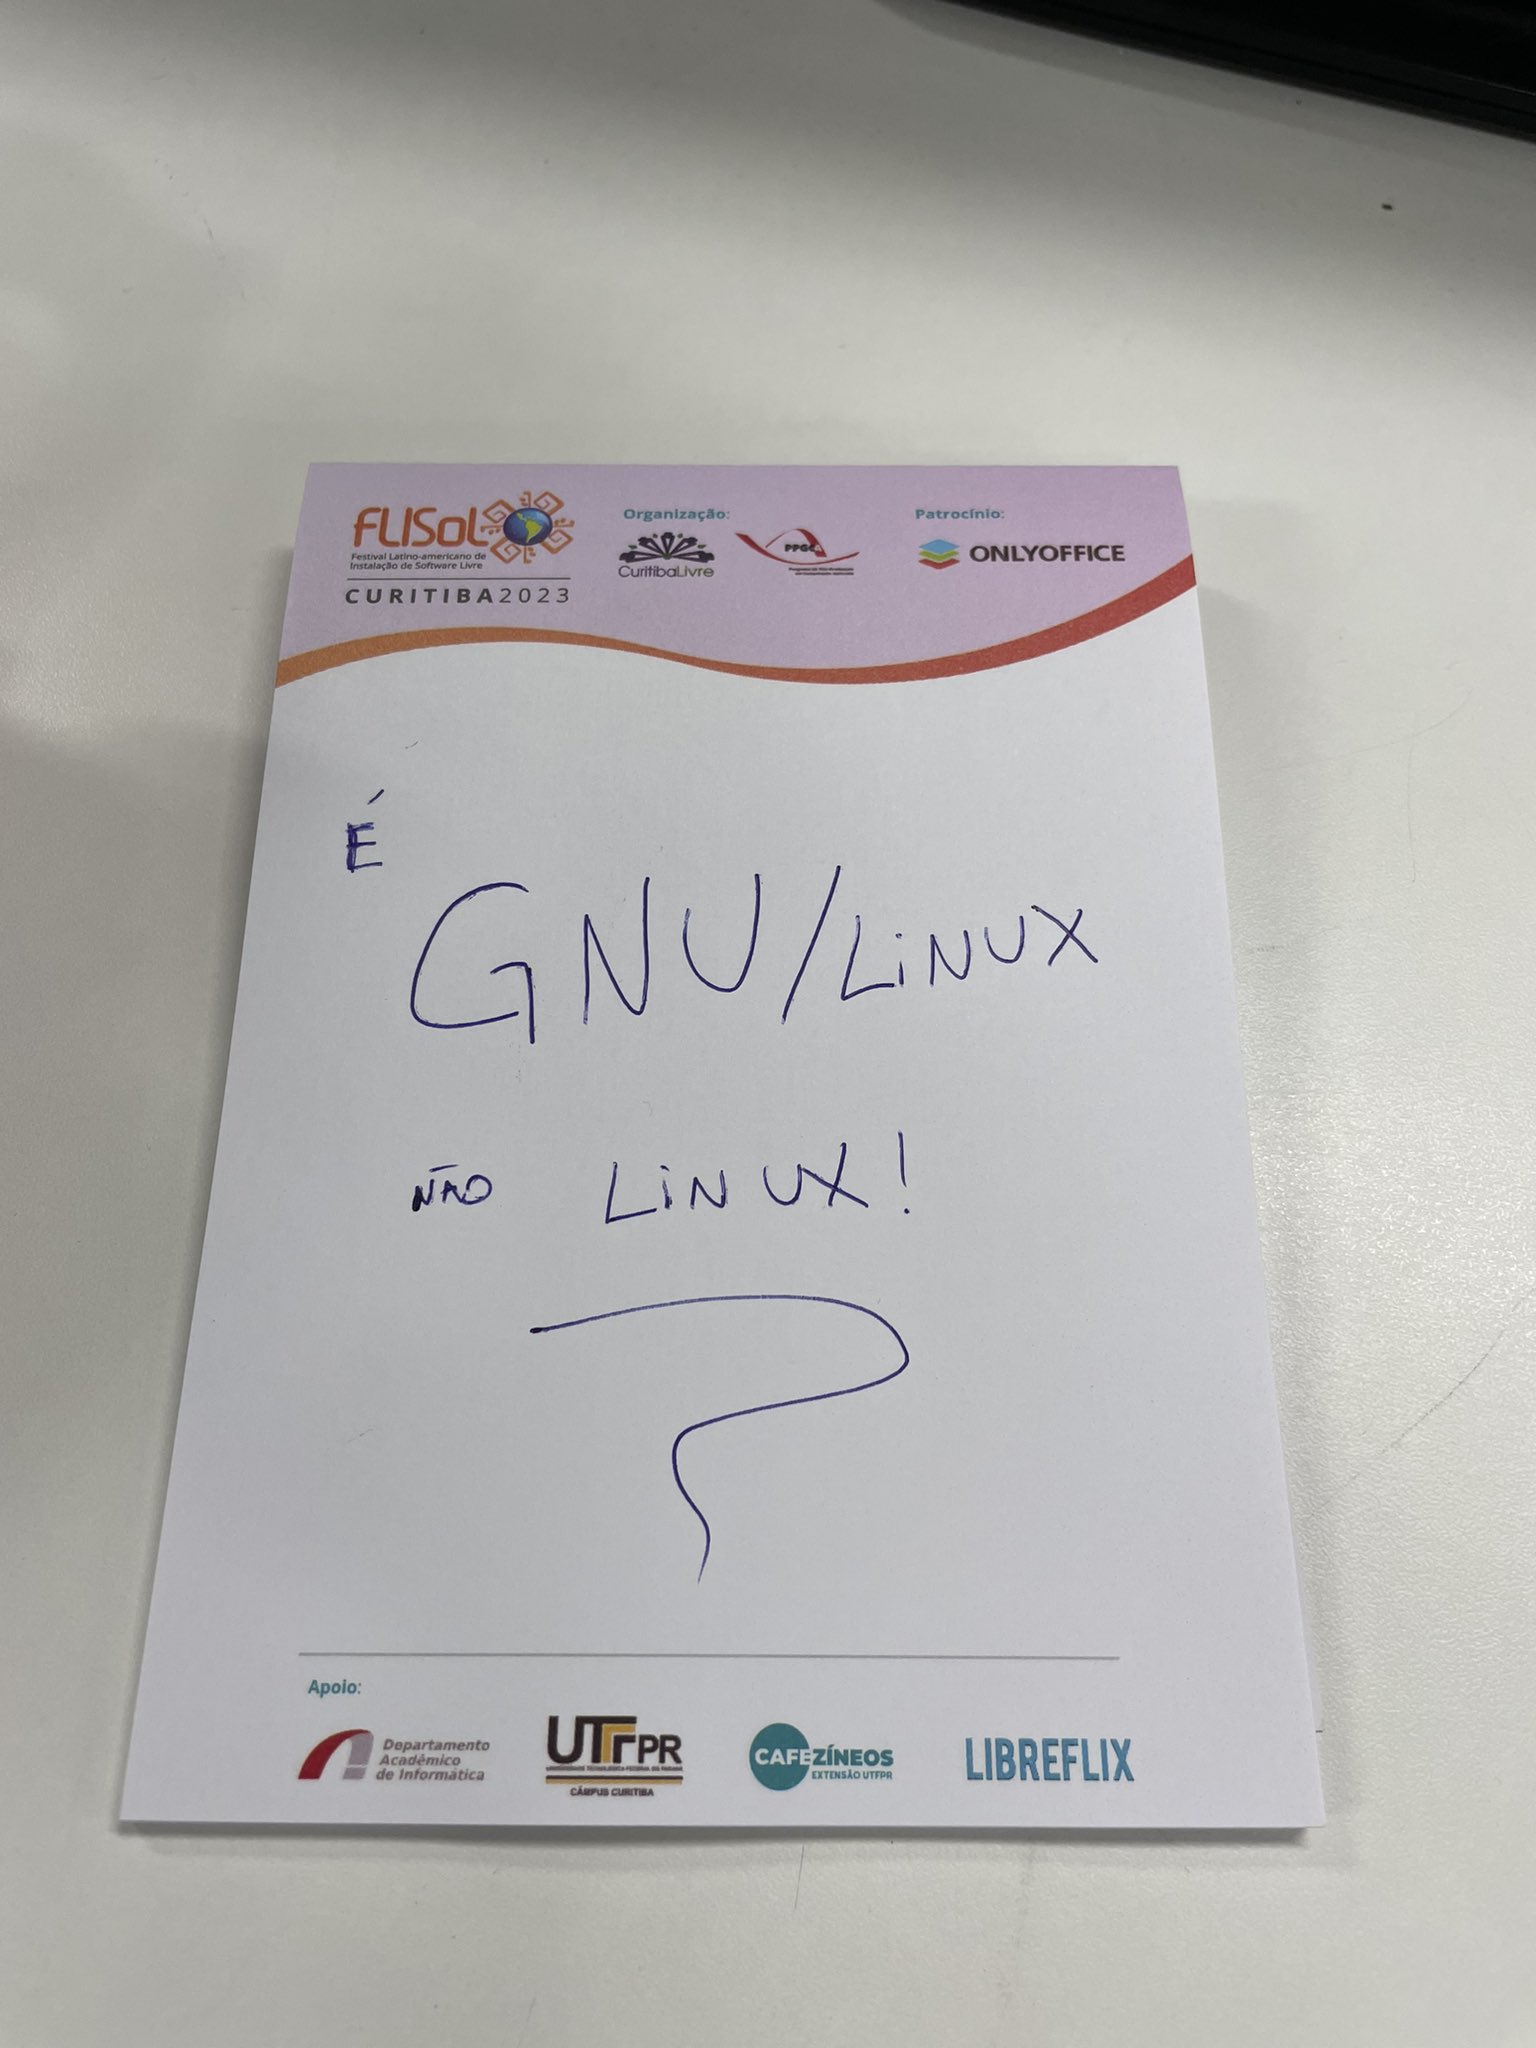 É GNU/Linux não apenas Linux